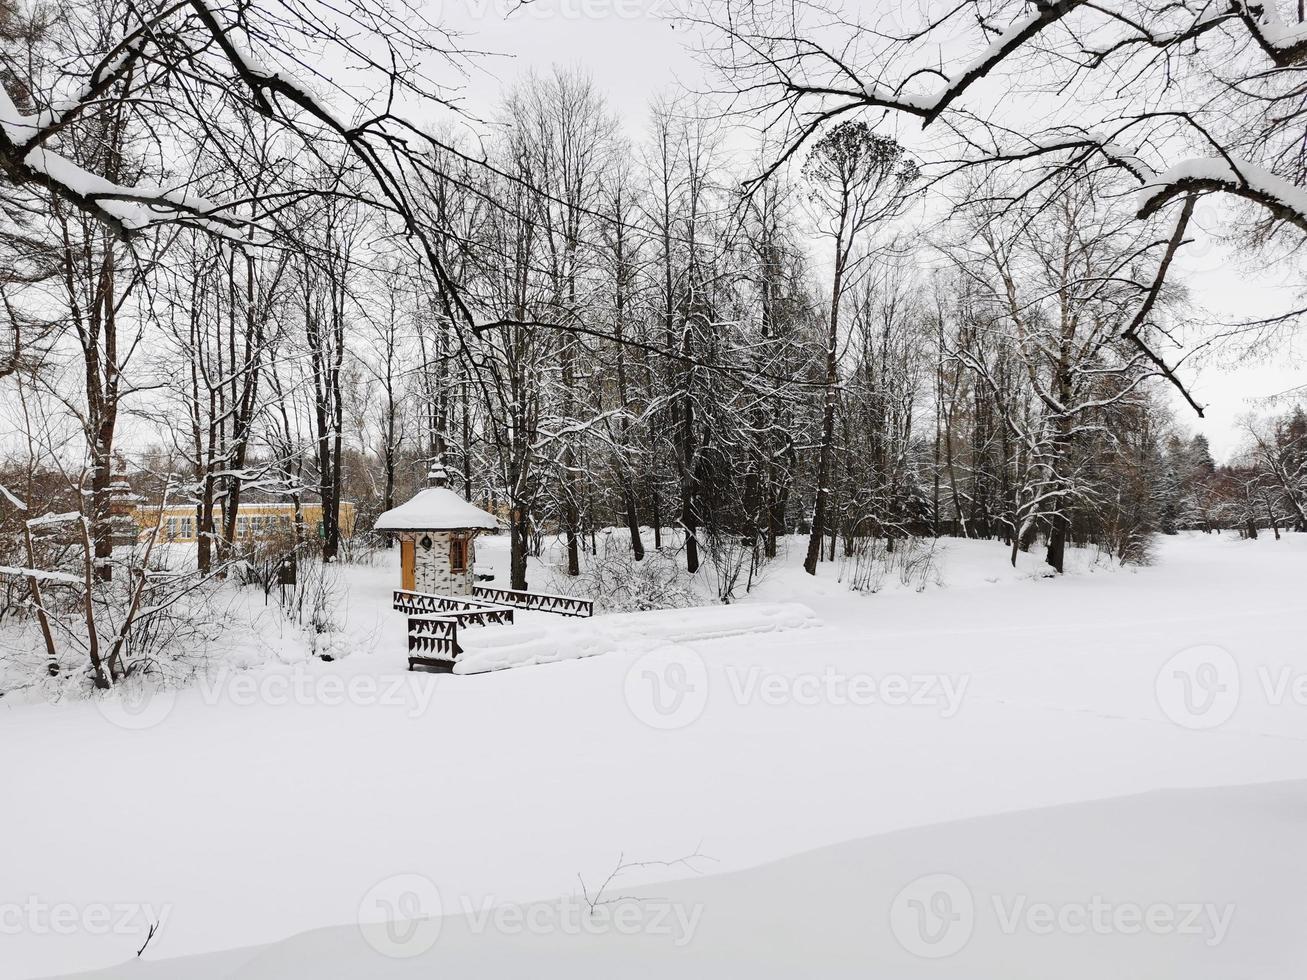 invierno en el parque pavlovsky nieve blanca y árboles fríos foto